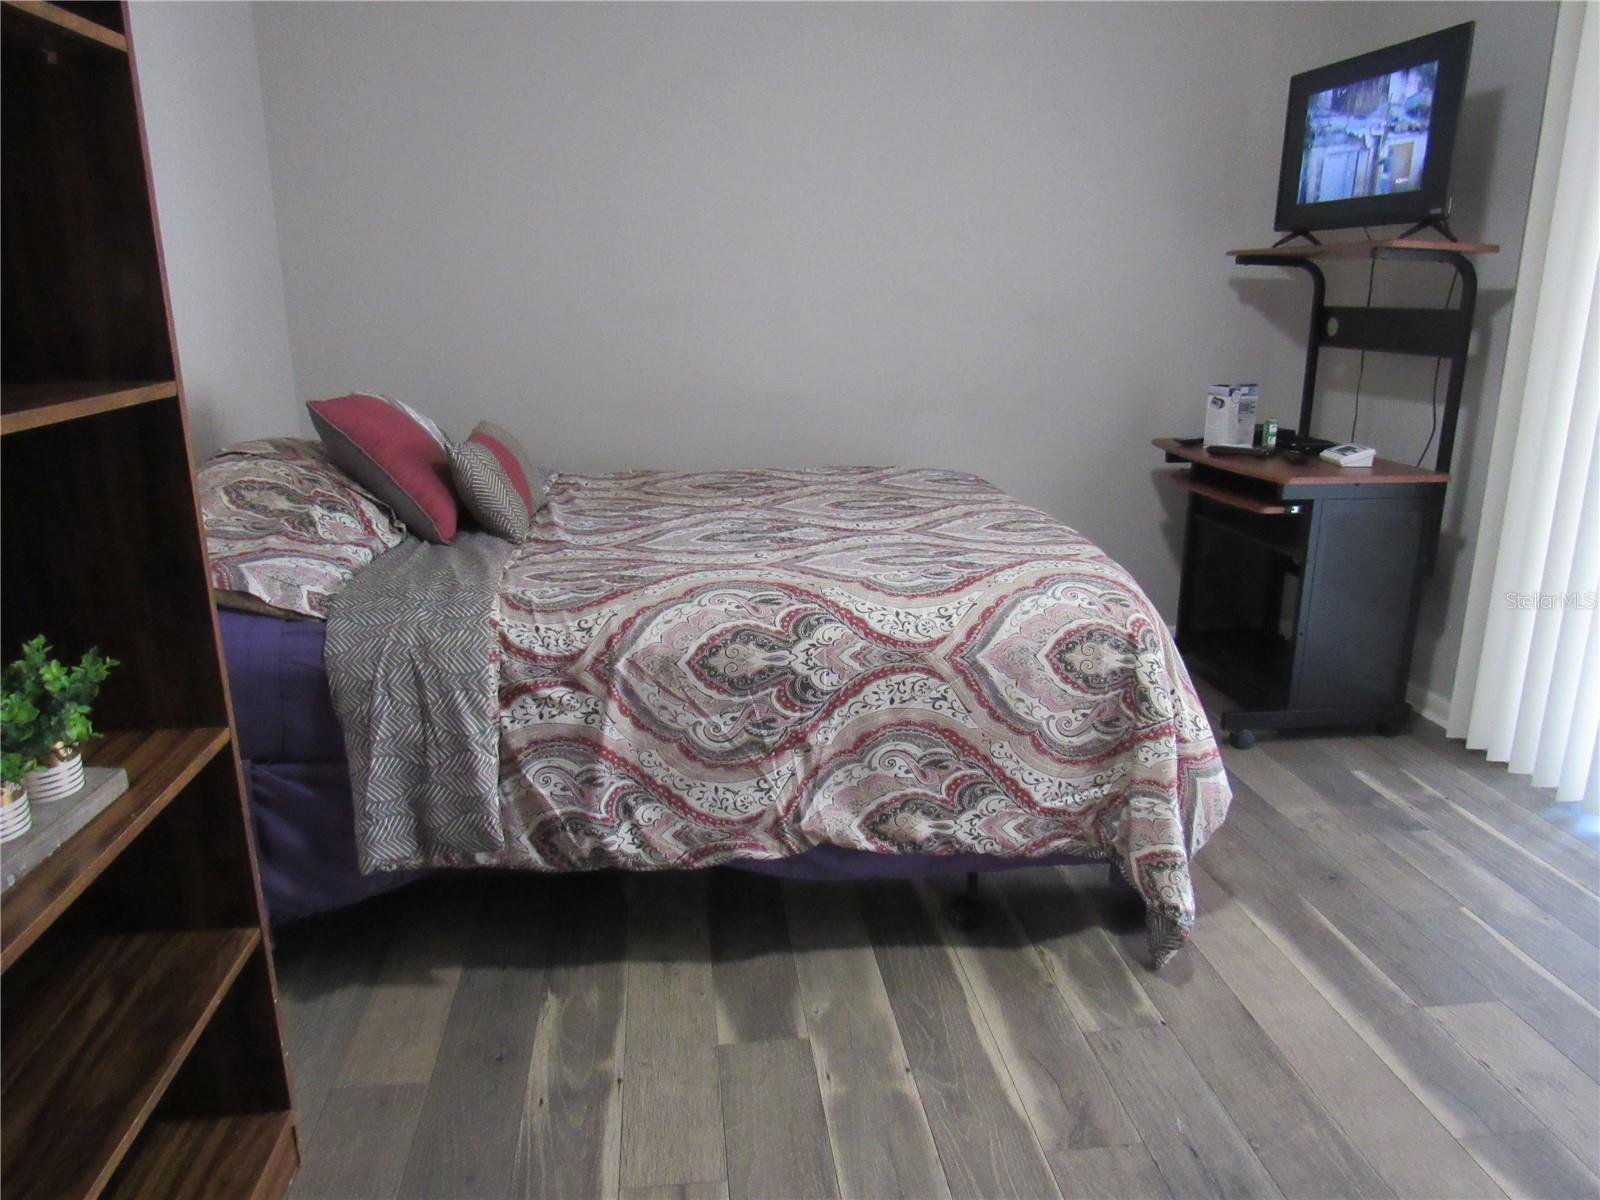 2nd bedroom - luxury vinyl planks - access the bonus room